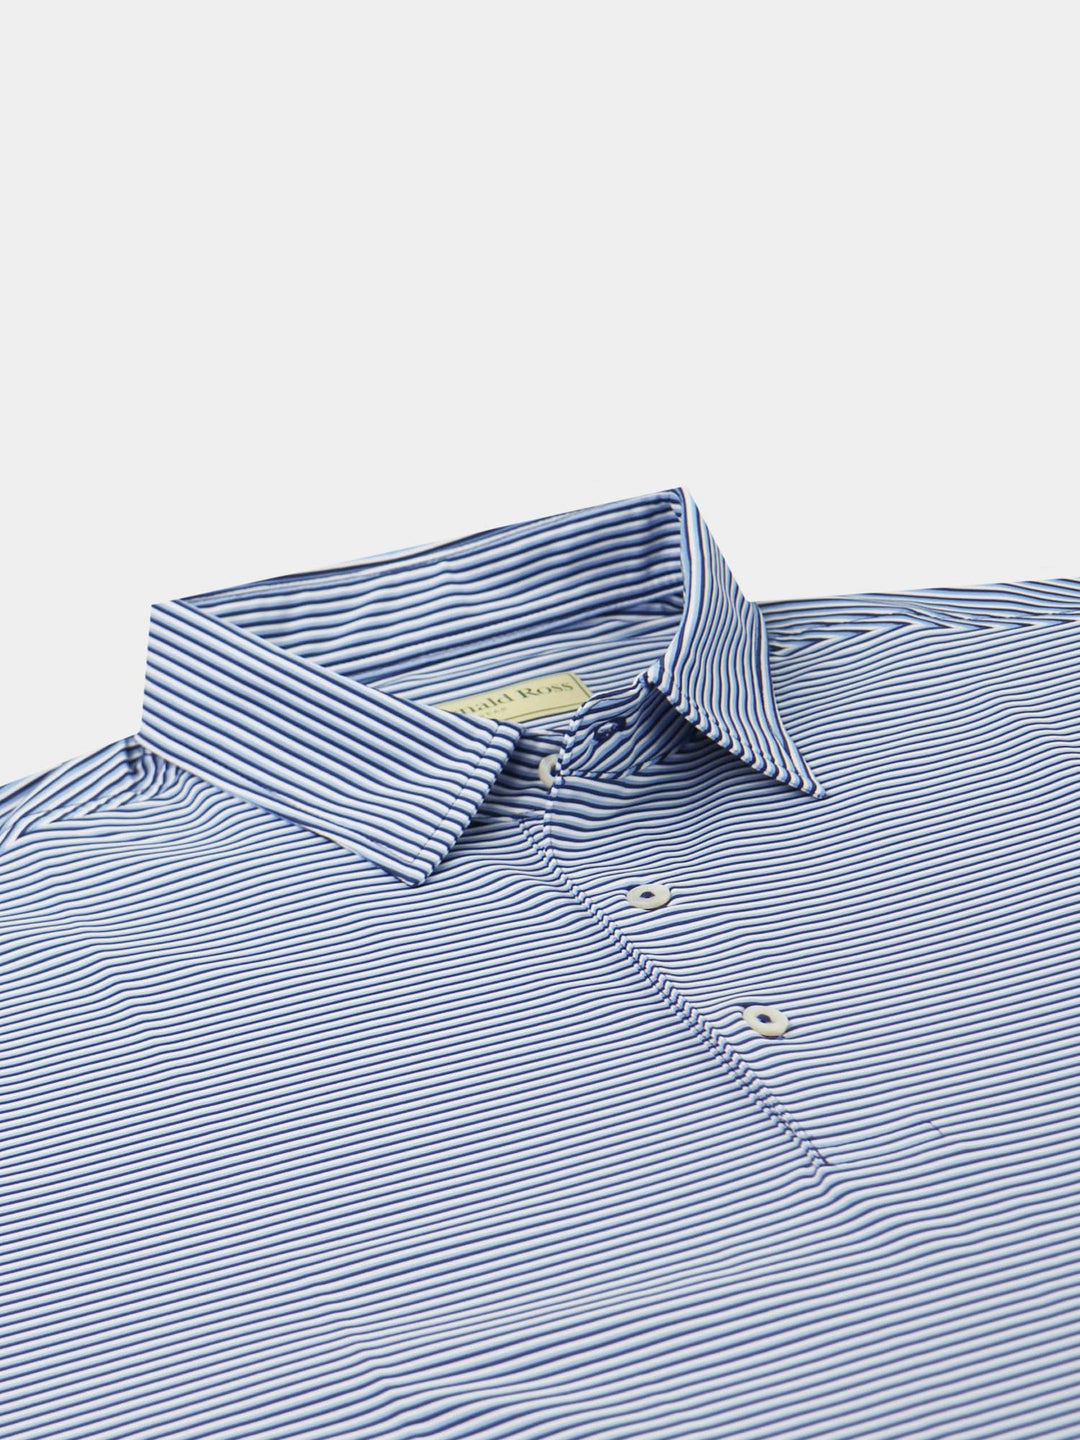 Donald Ross Mens Short Sleeve Jersey Polo- NAVY/ BLUE JAY/WHITE